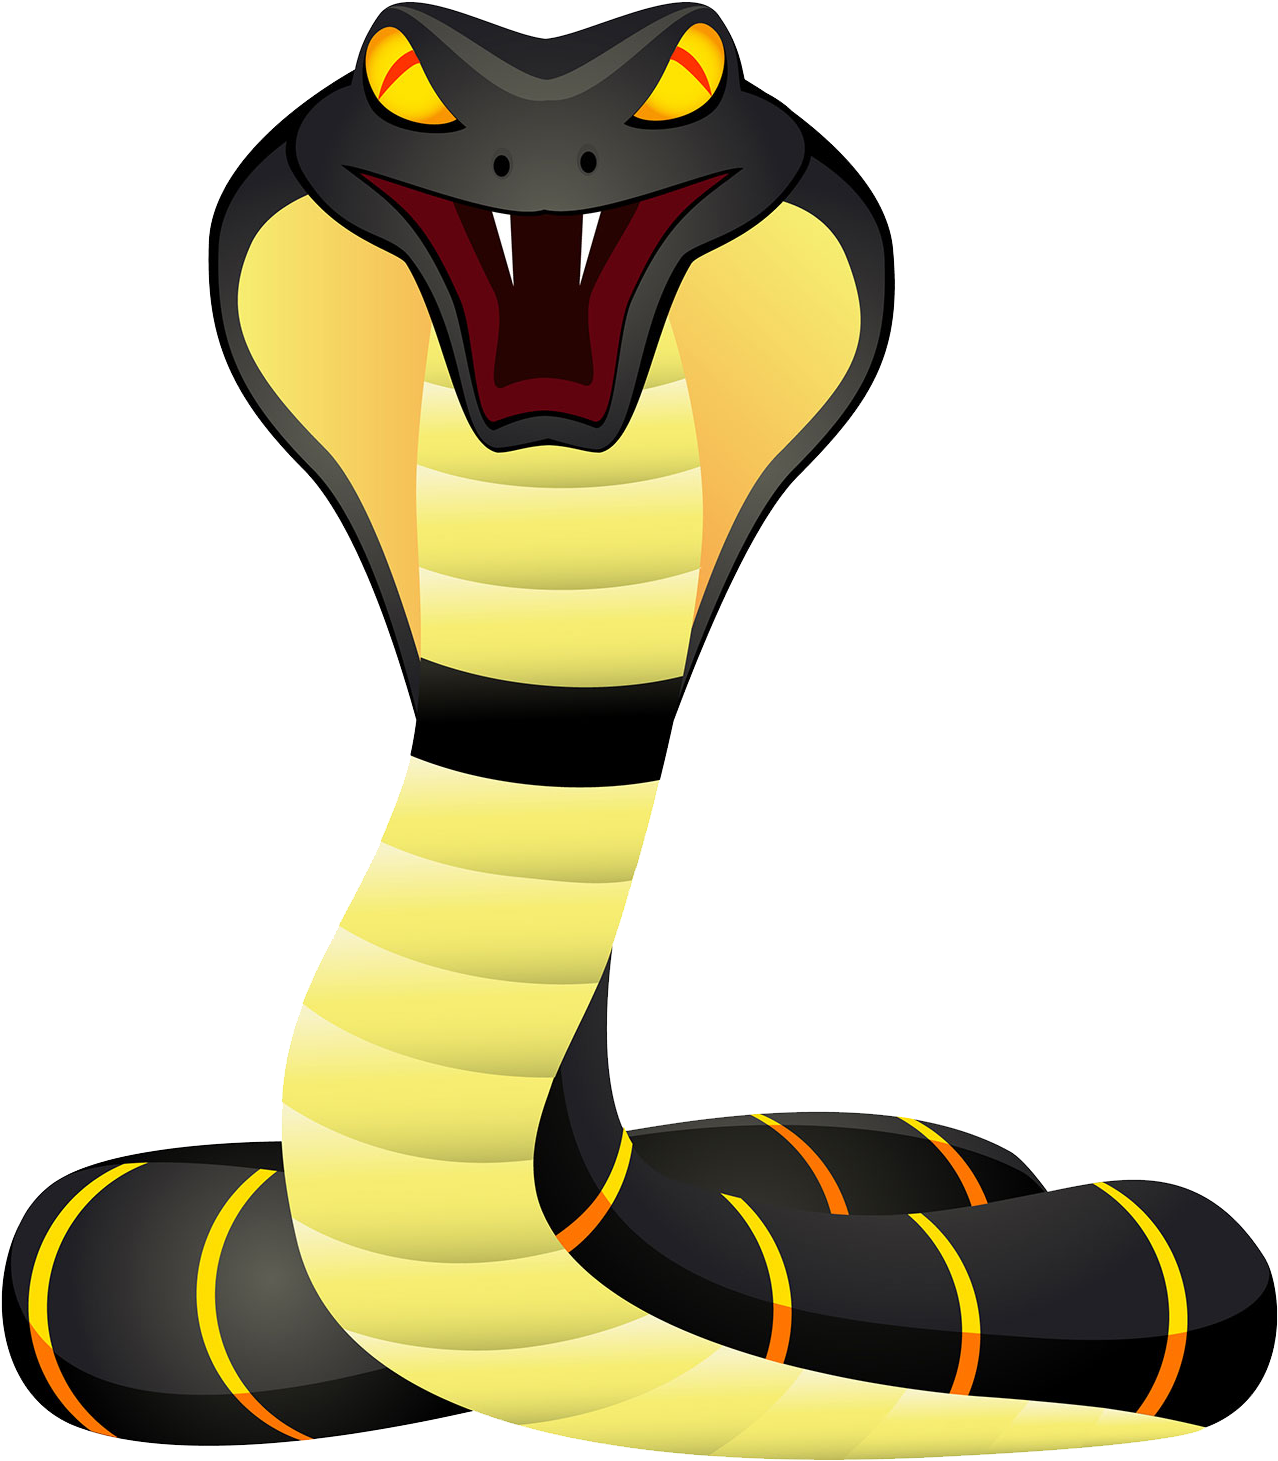 cobra clipart snake animal